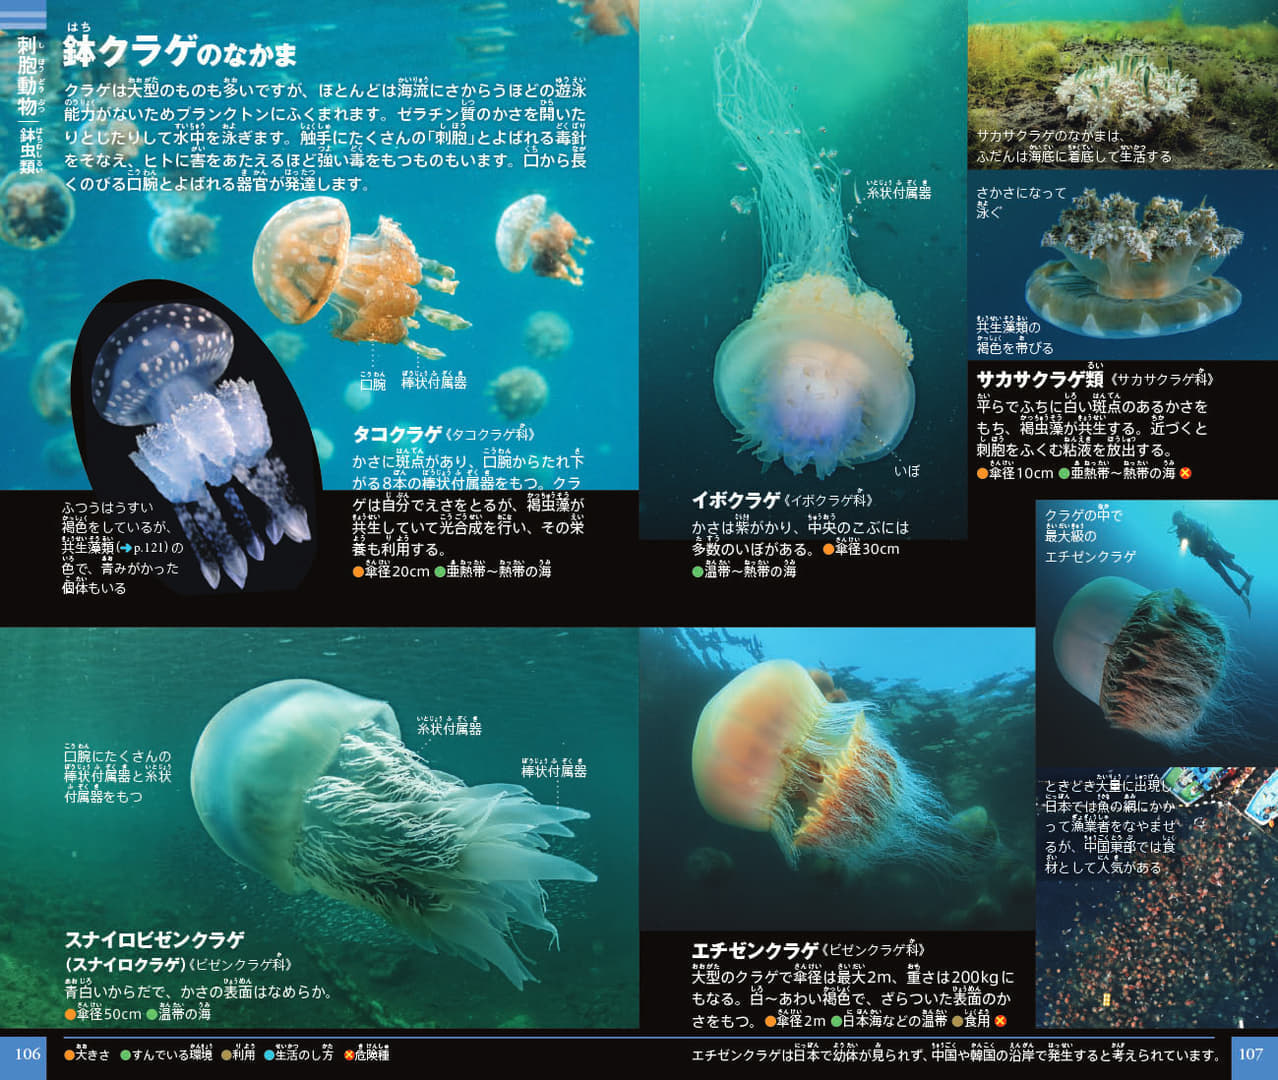 「ネオポケットシリーズ」から『プランクトン』図鑑が発売。日本初となる約500種のプランクトンが掲載
_005